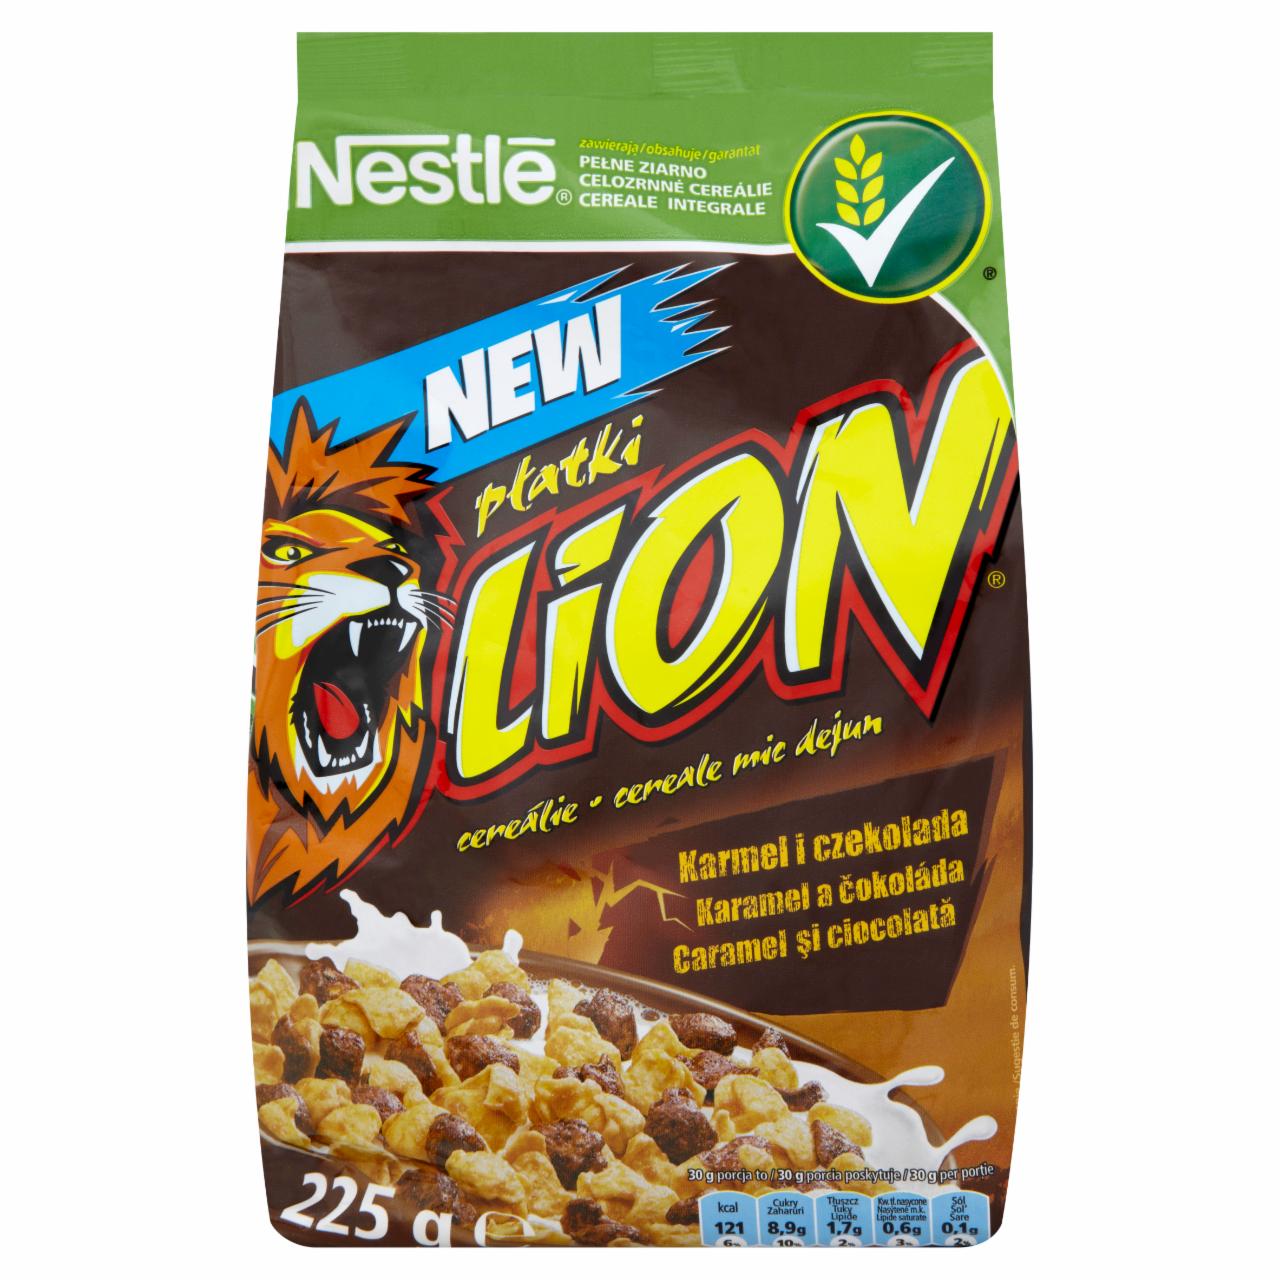 Zdjęcia - Nestlé Lion Płatki śniadaniowe 225 g